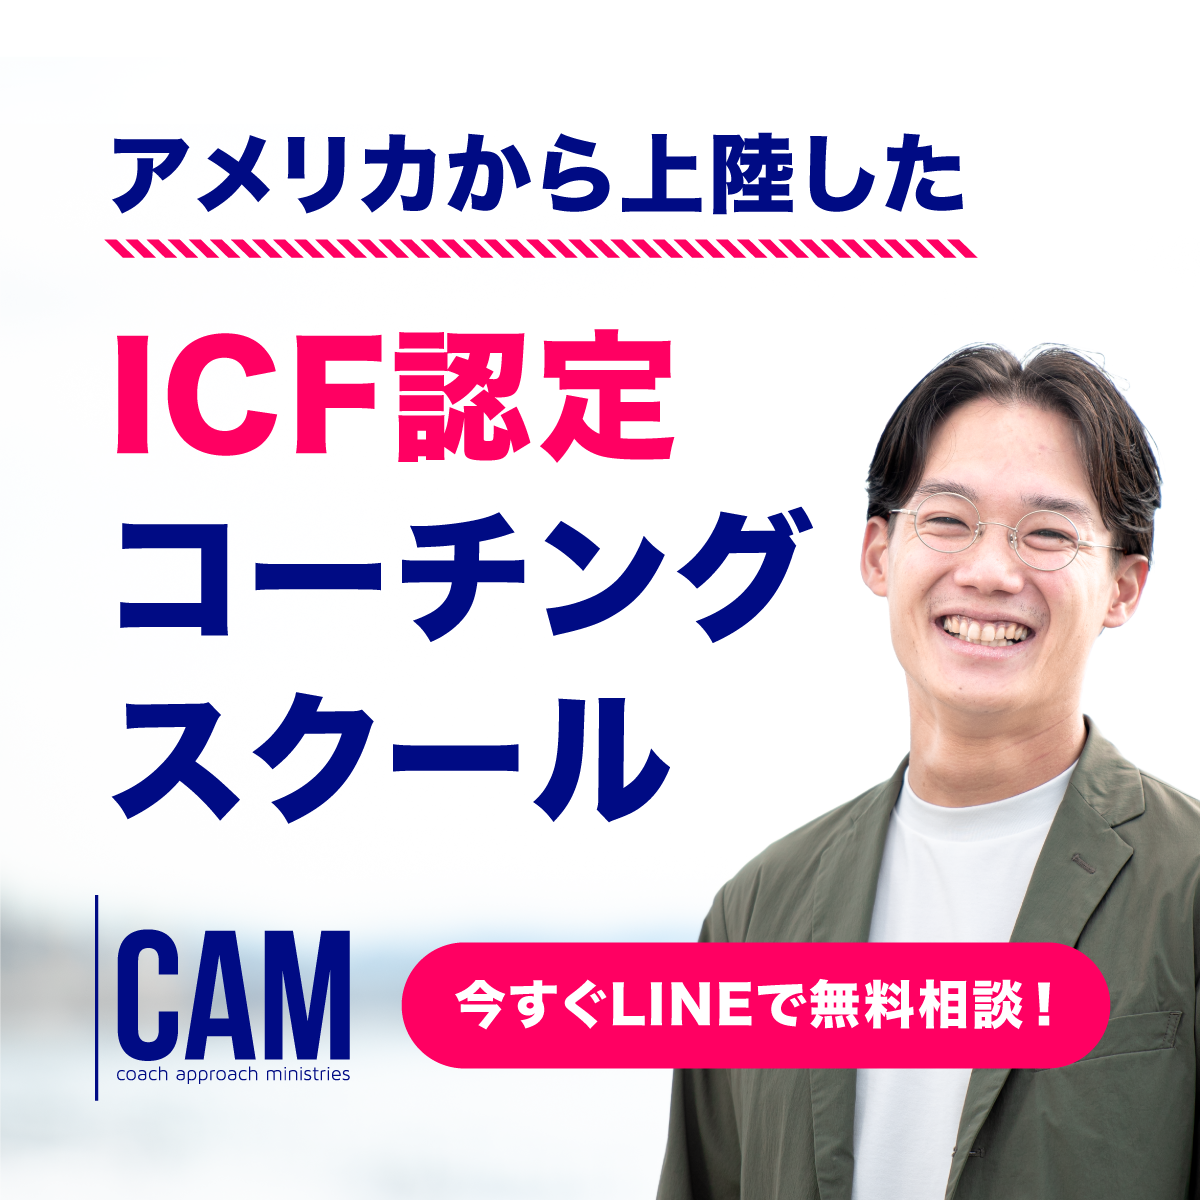 ICF認定コーチングスクール CAM Japanバナー